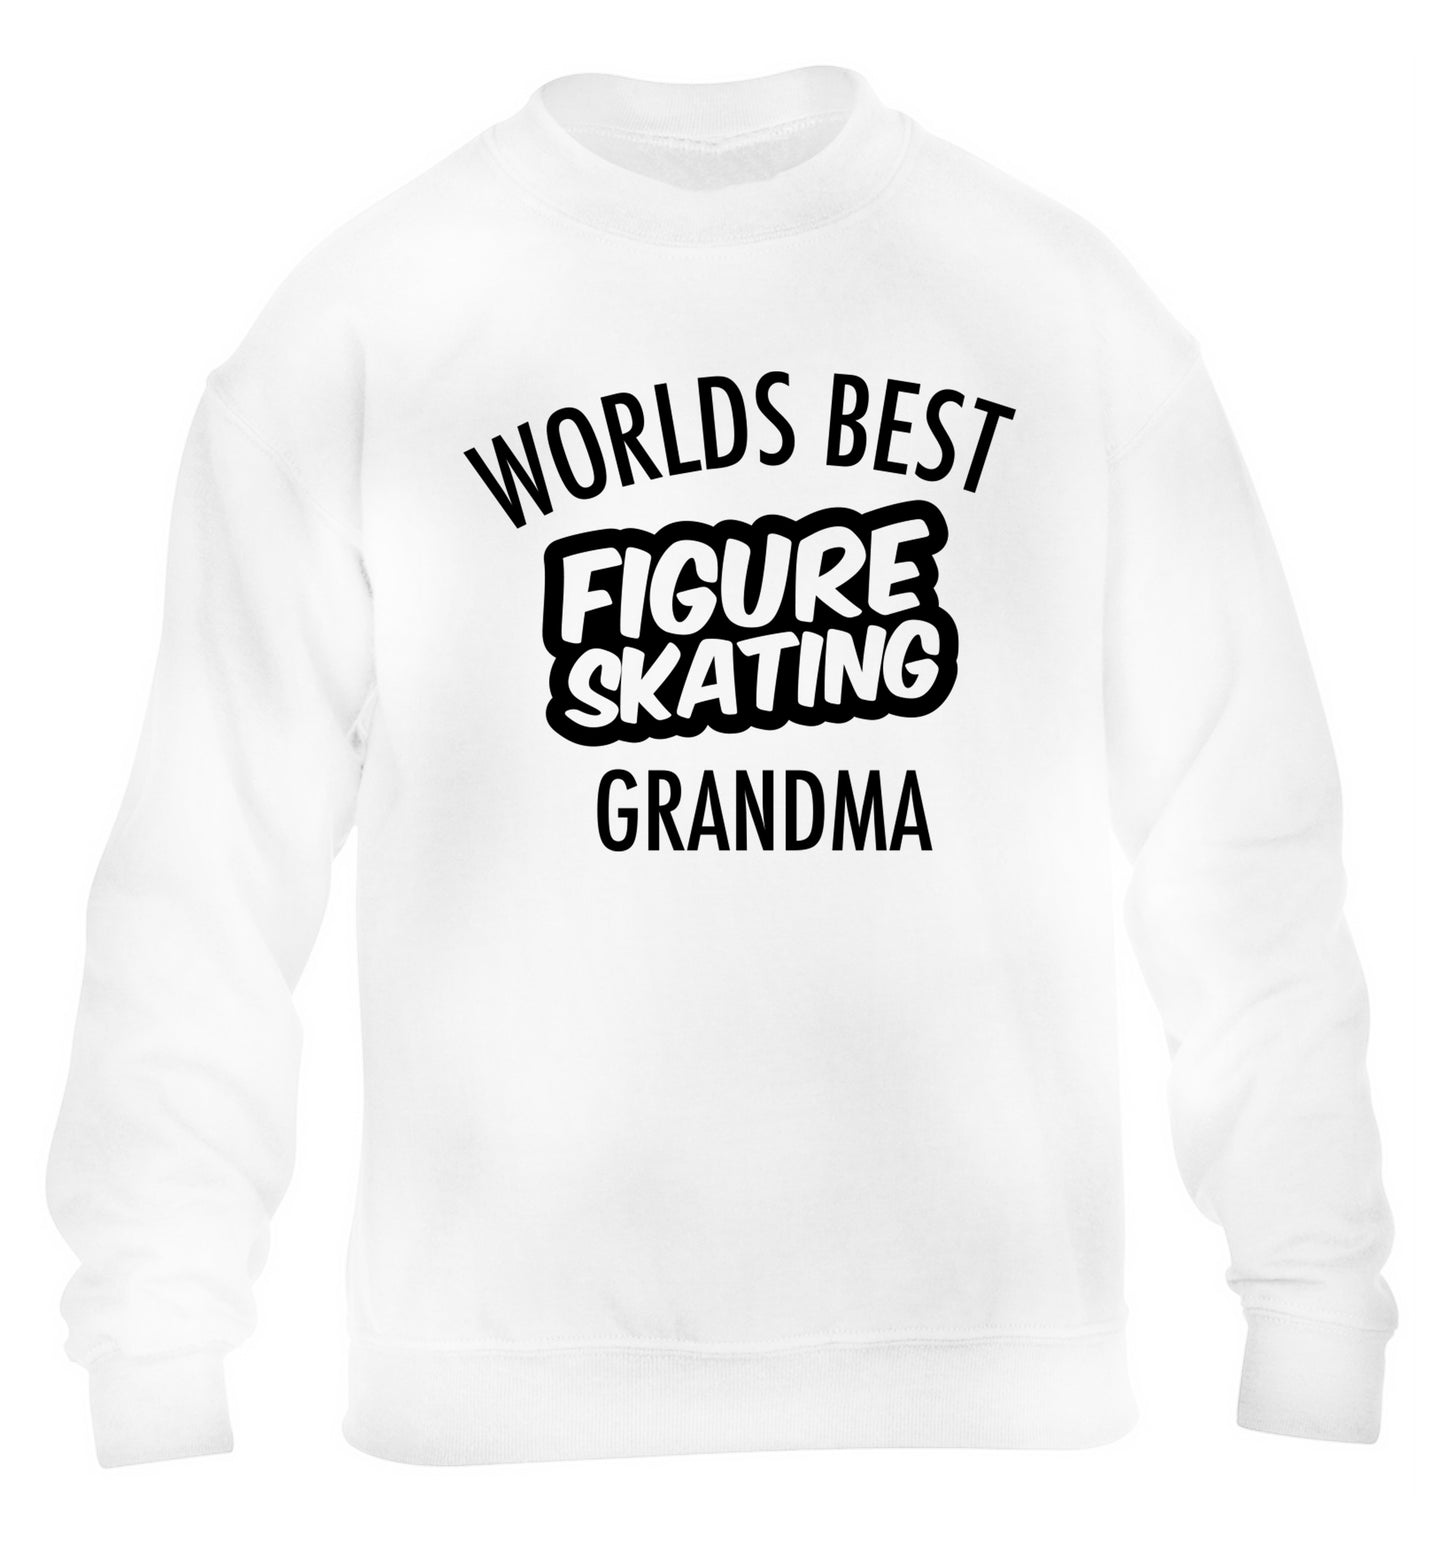 Worlds best figure skating grandma children's white sweater 12-14 Years